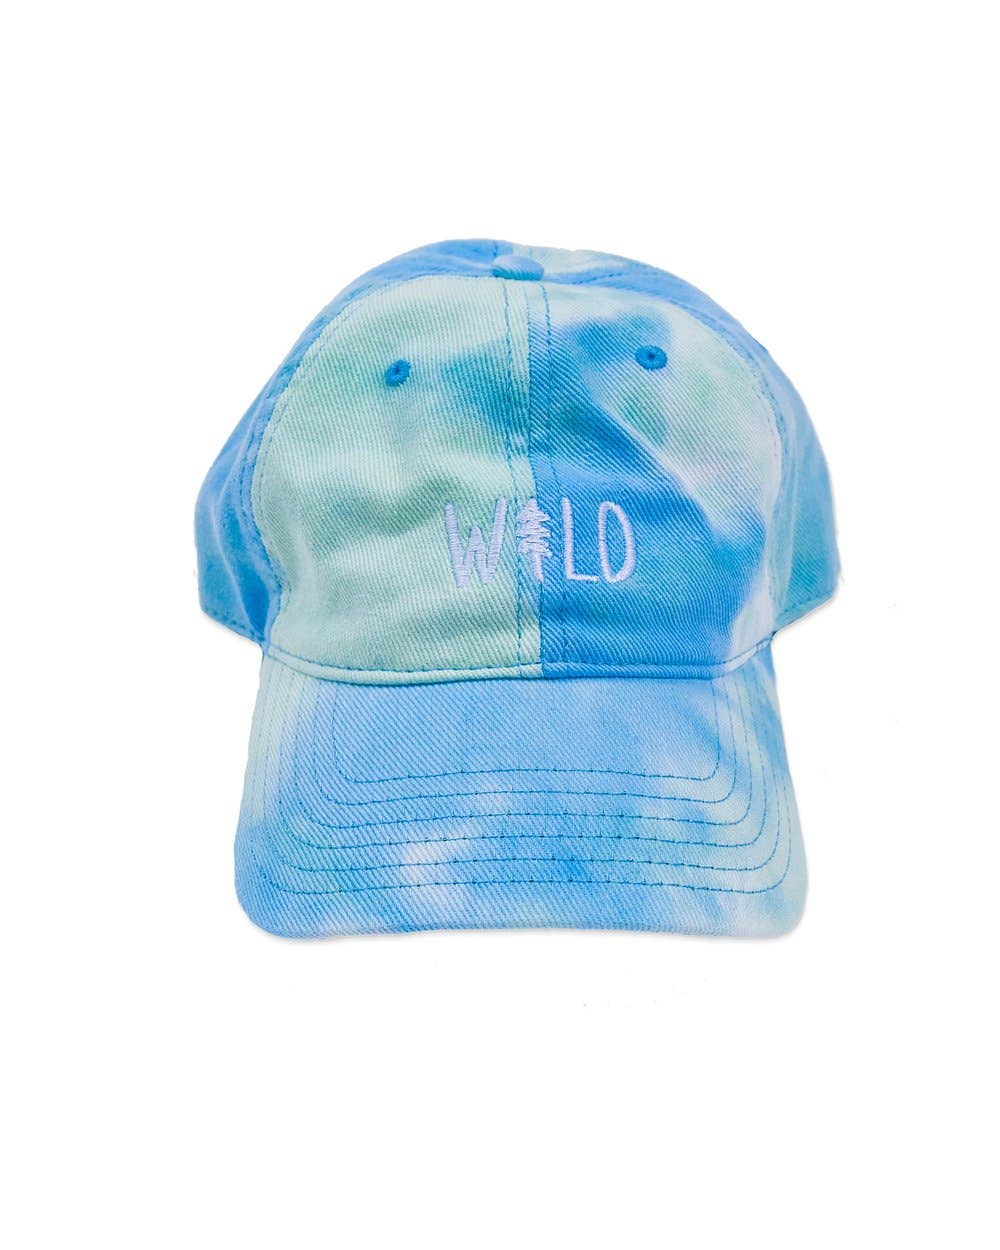 Wild Pine tie dye dad hat by Keep Nature Wild